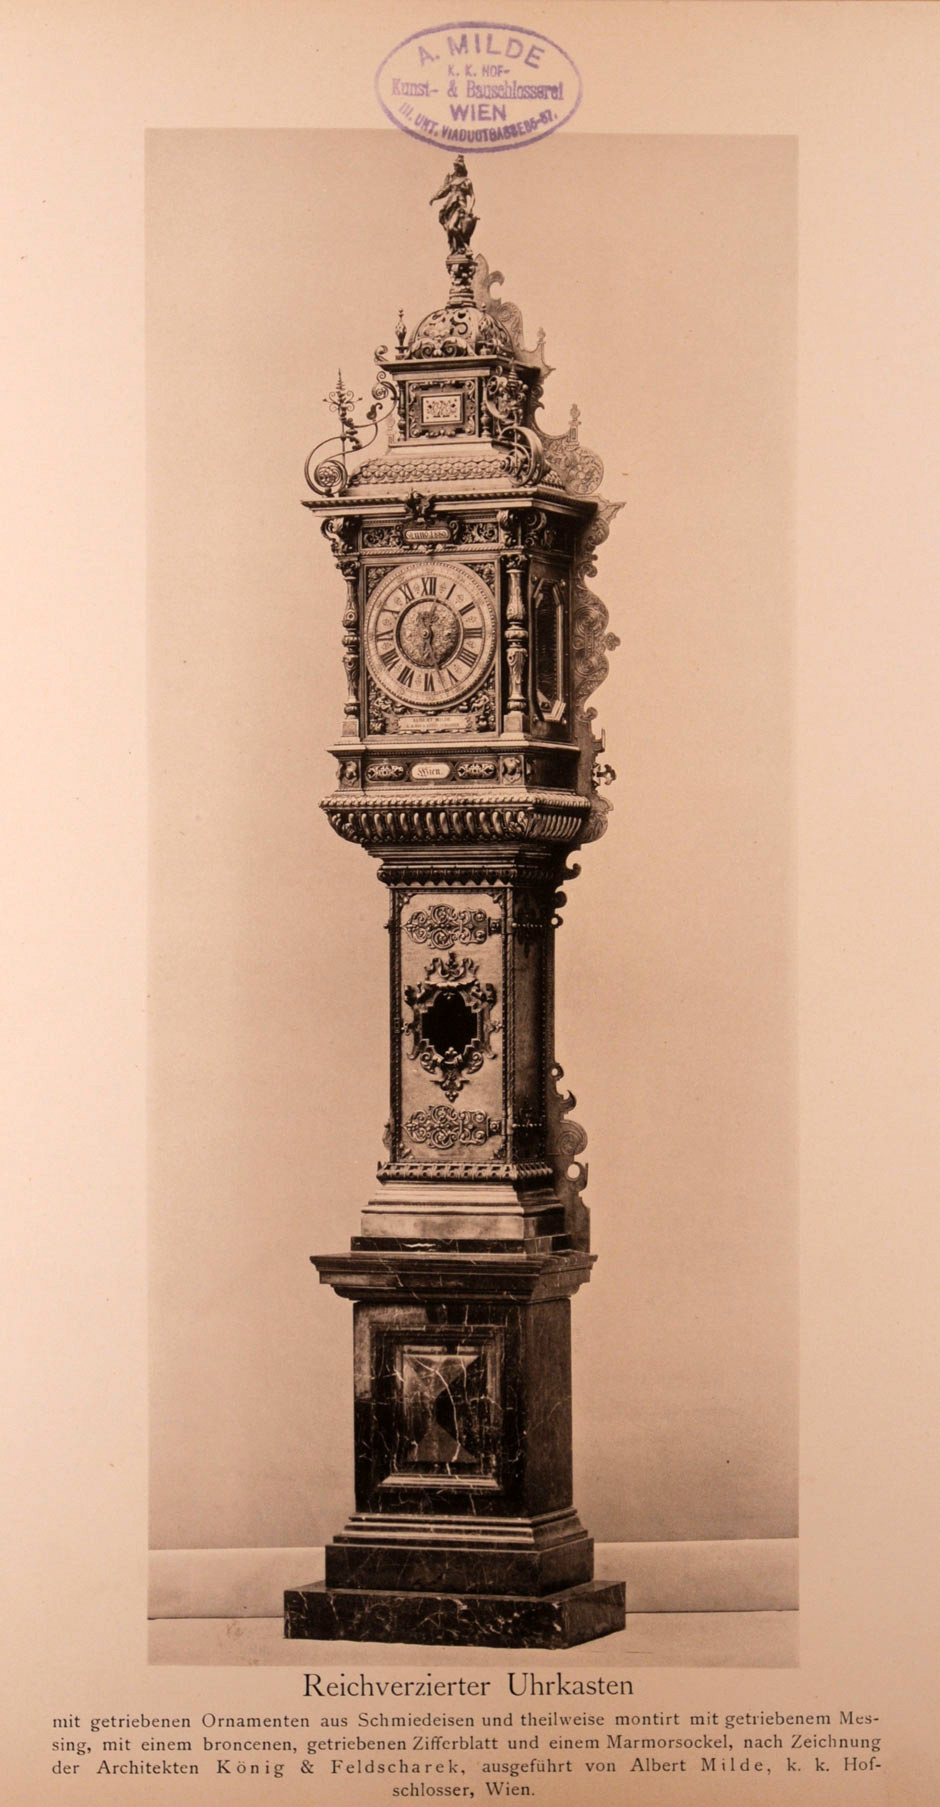 Reichverzierter Uhrkasten mit getriebenen Ornamenten aus Schmiedeeisen und teilweise montiert mit getriebenen Messing, mit einem bronzenen getriebenen Ziffernblatt und einem Marmorsockel